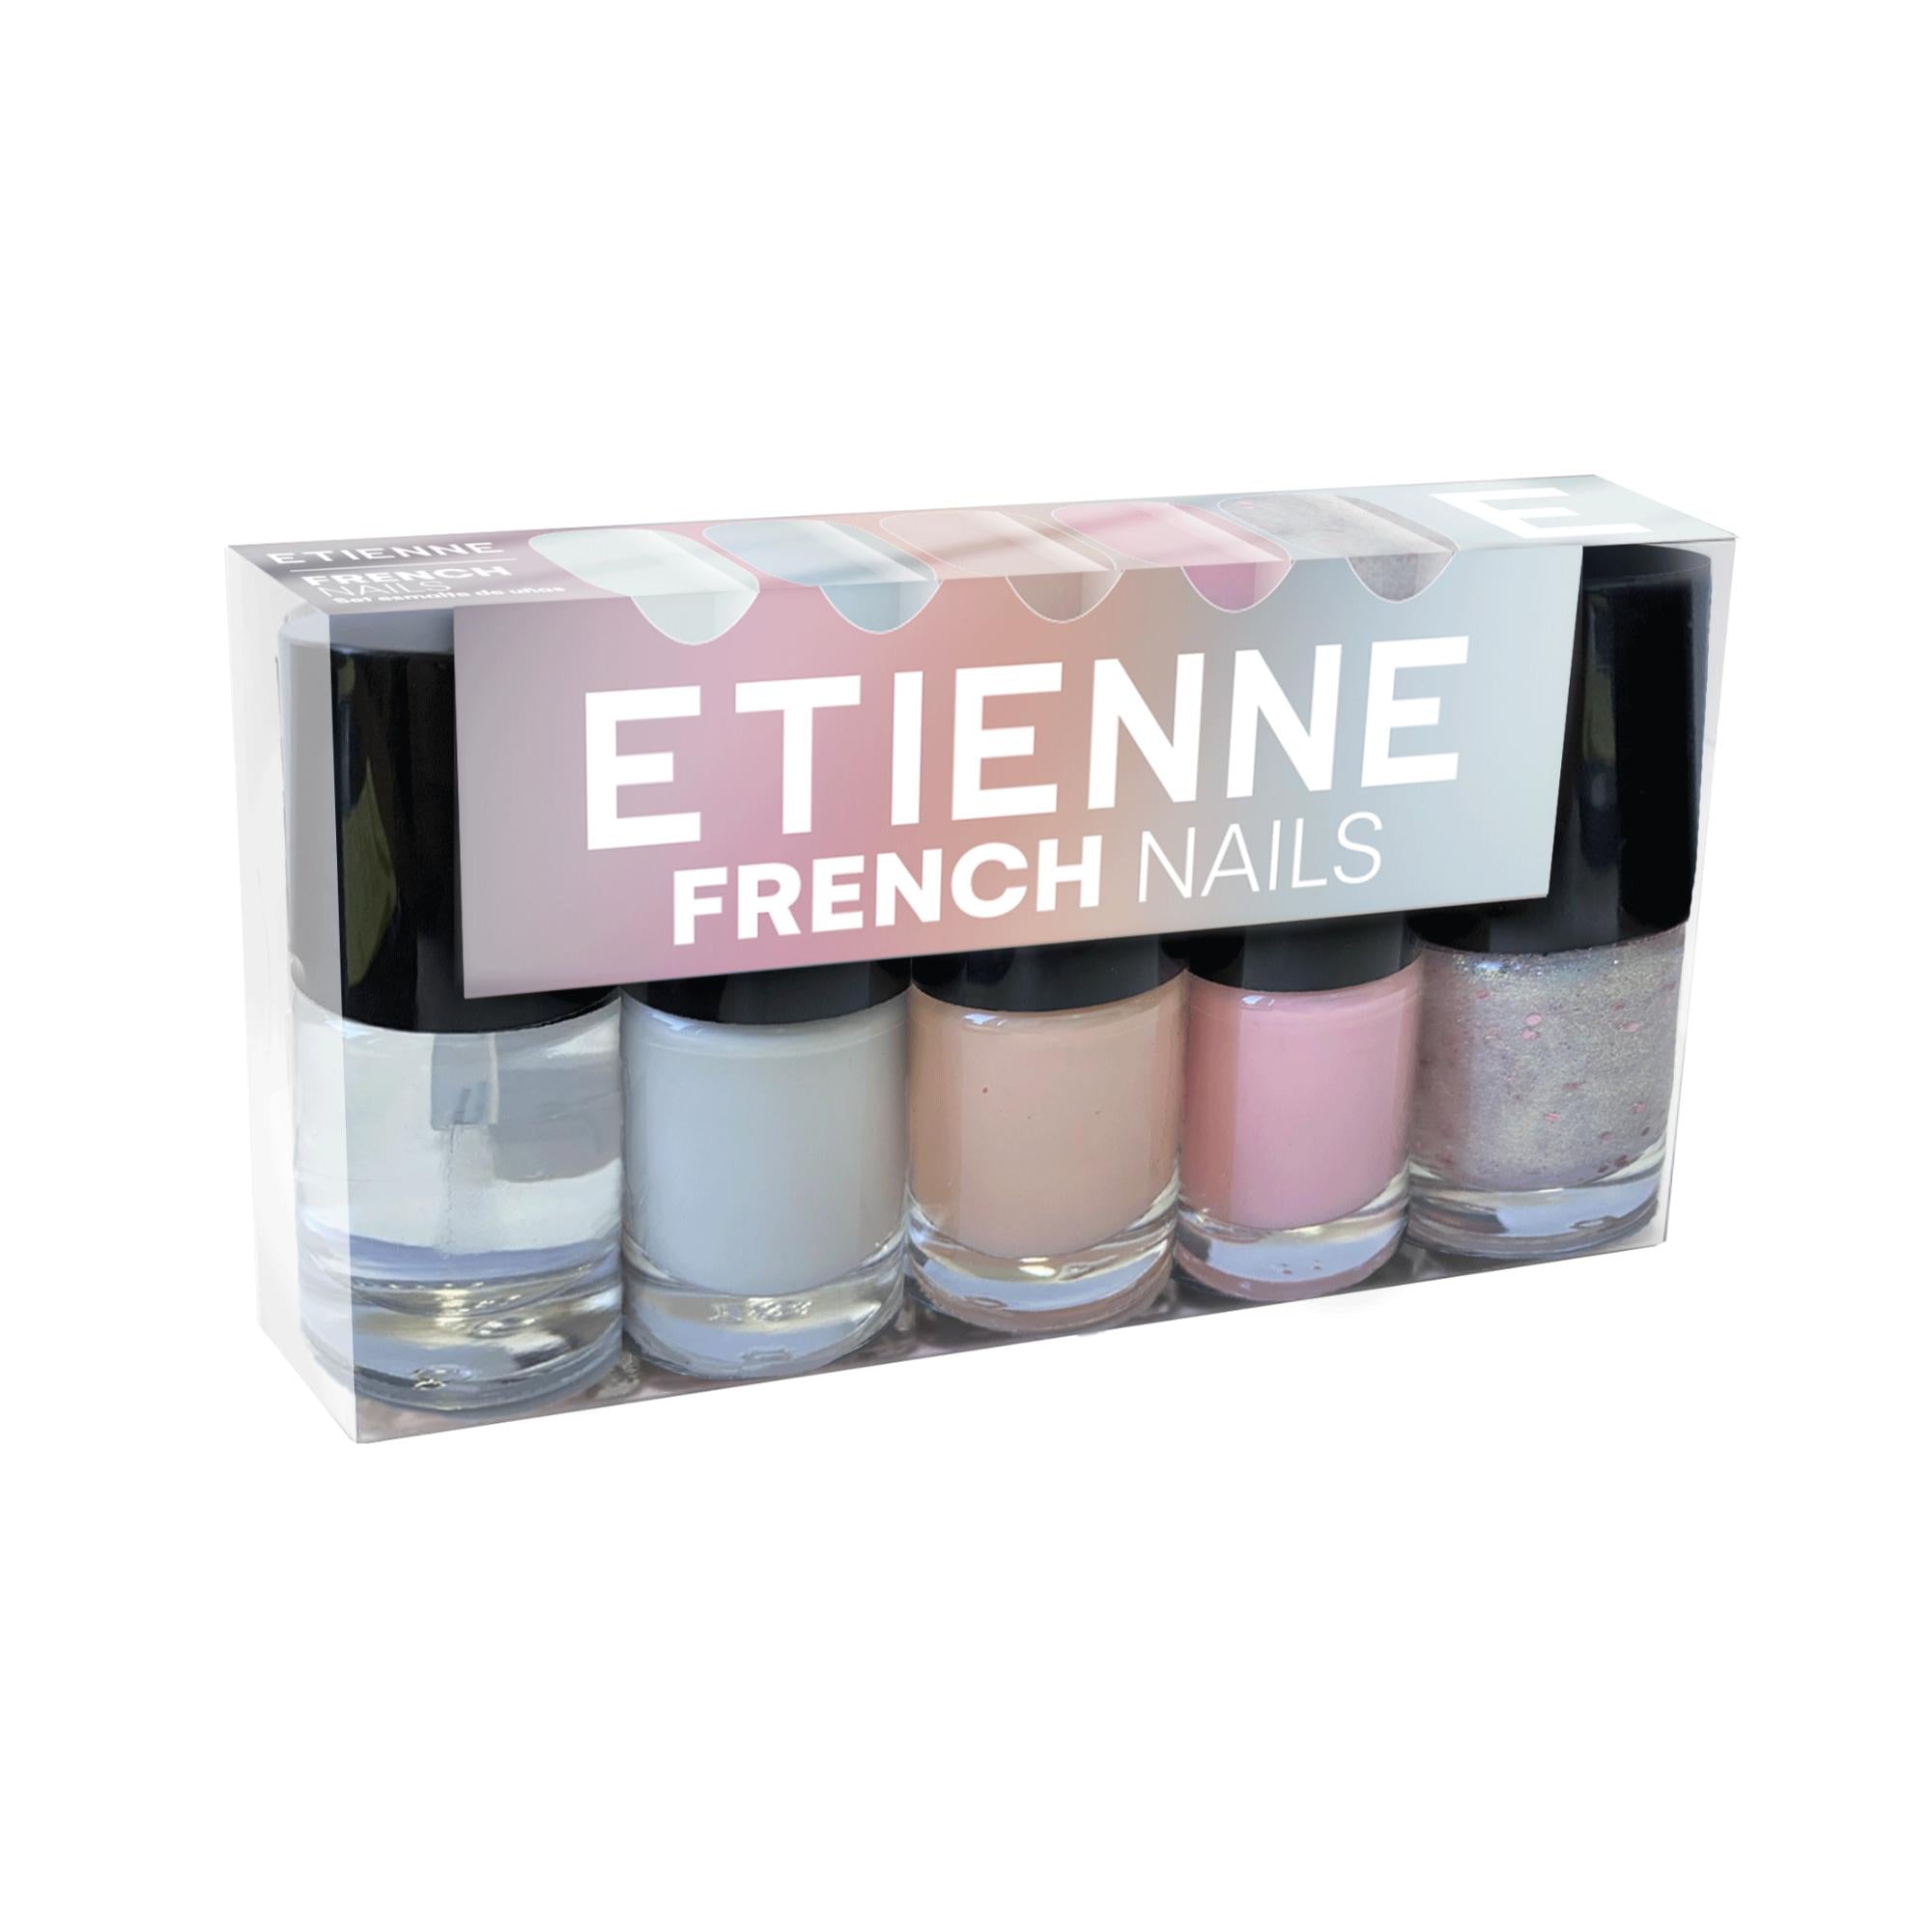 Etienne Set De Esmaltes French Nails